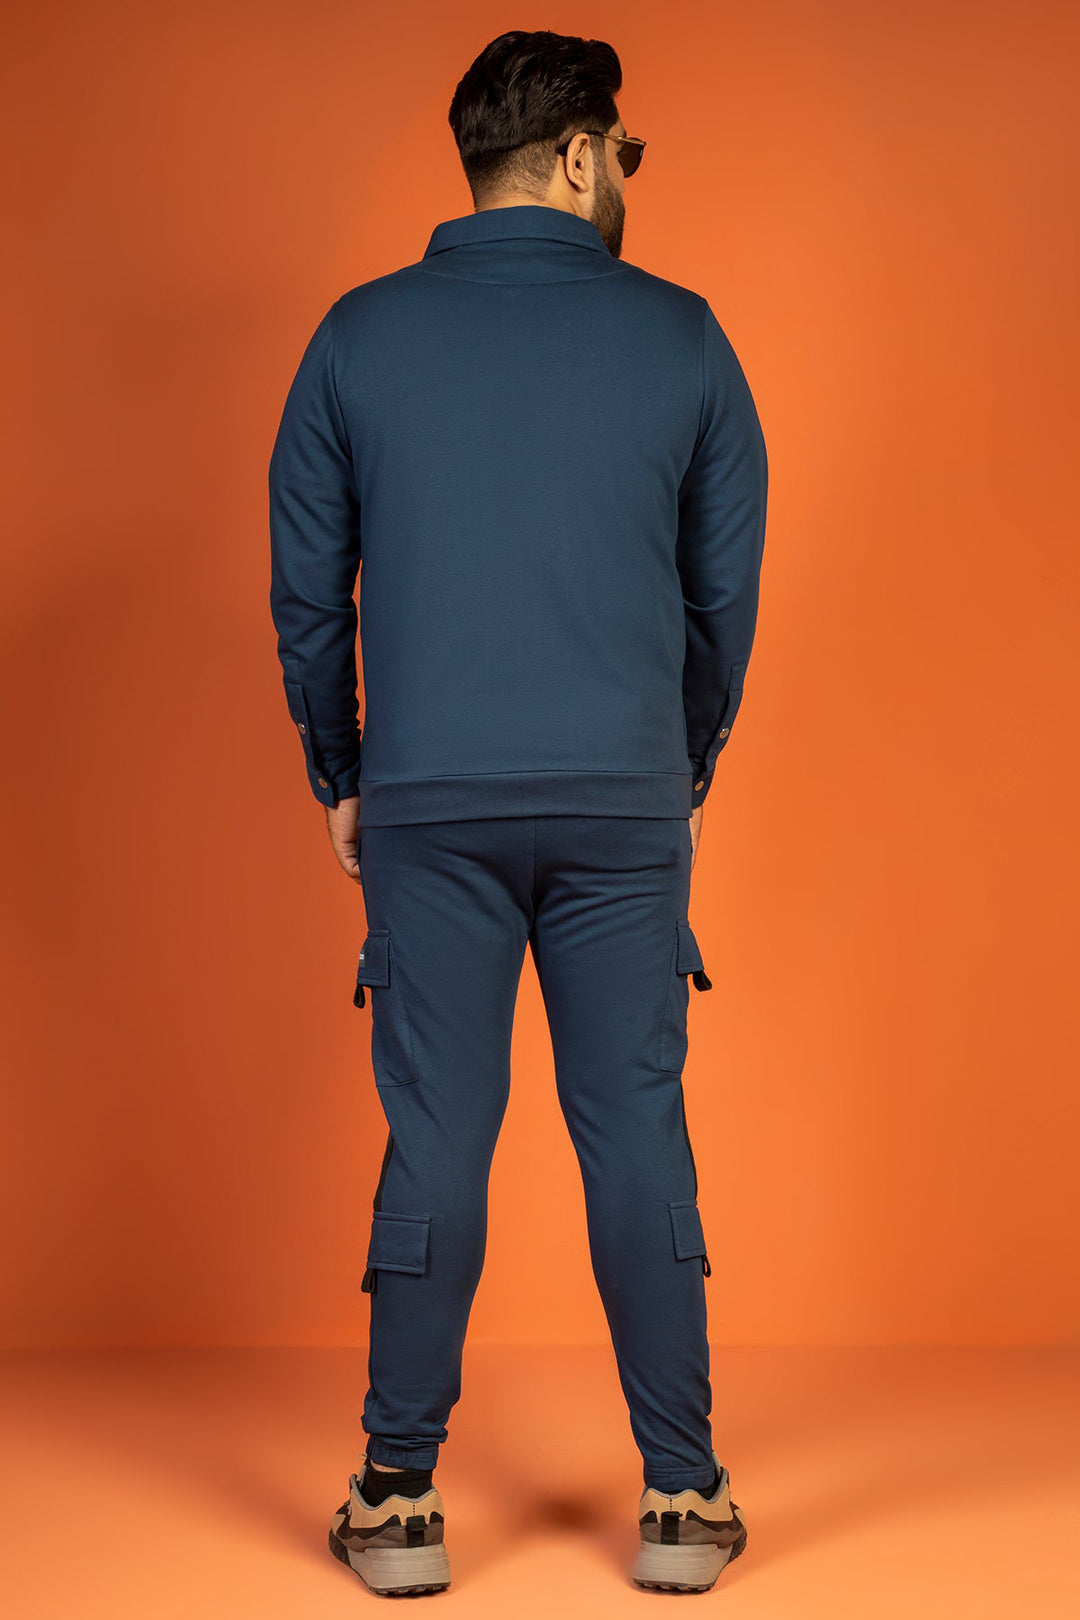 Sclothers Blue Zipper Jacket (Plus Size) - W23 - MJ0013P